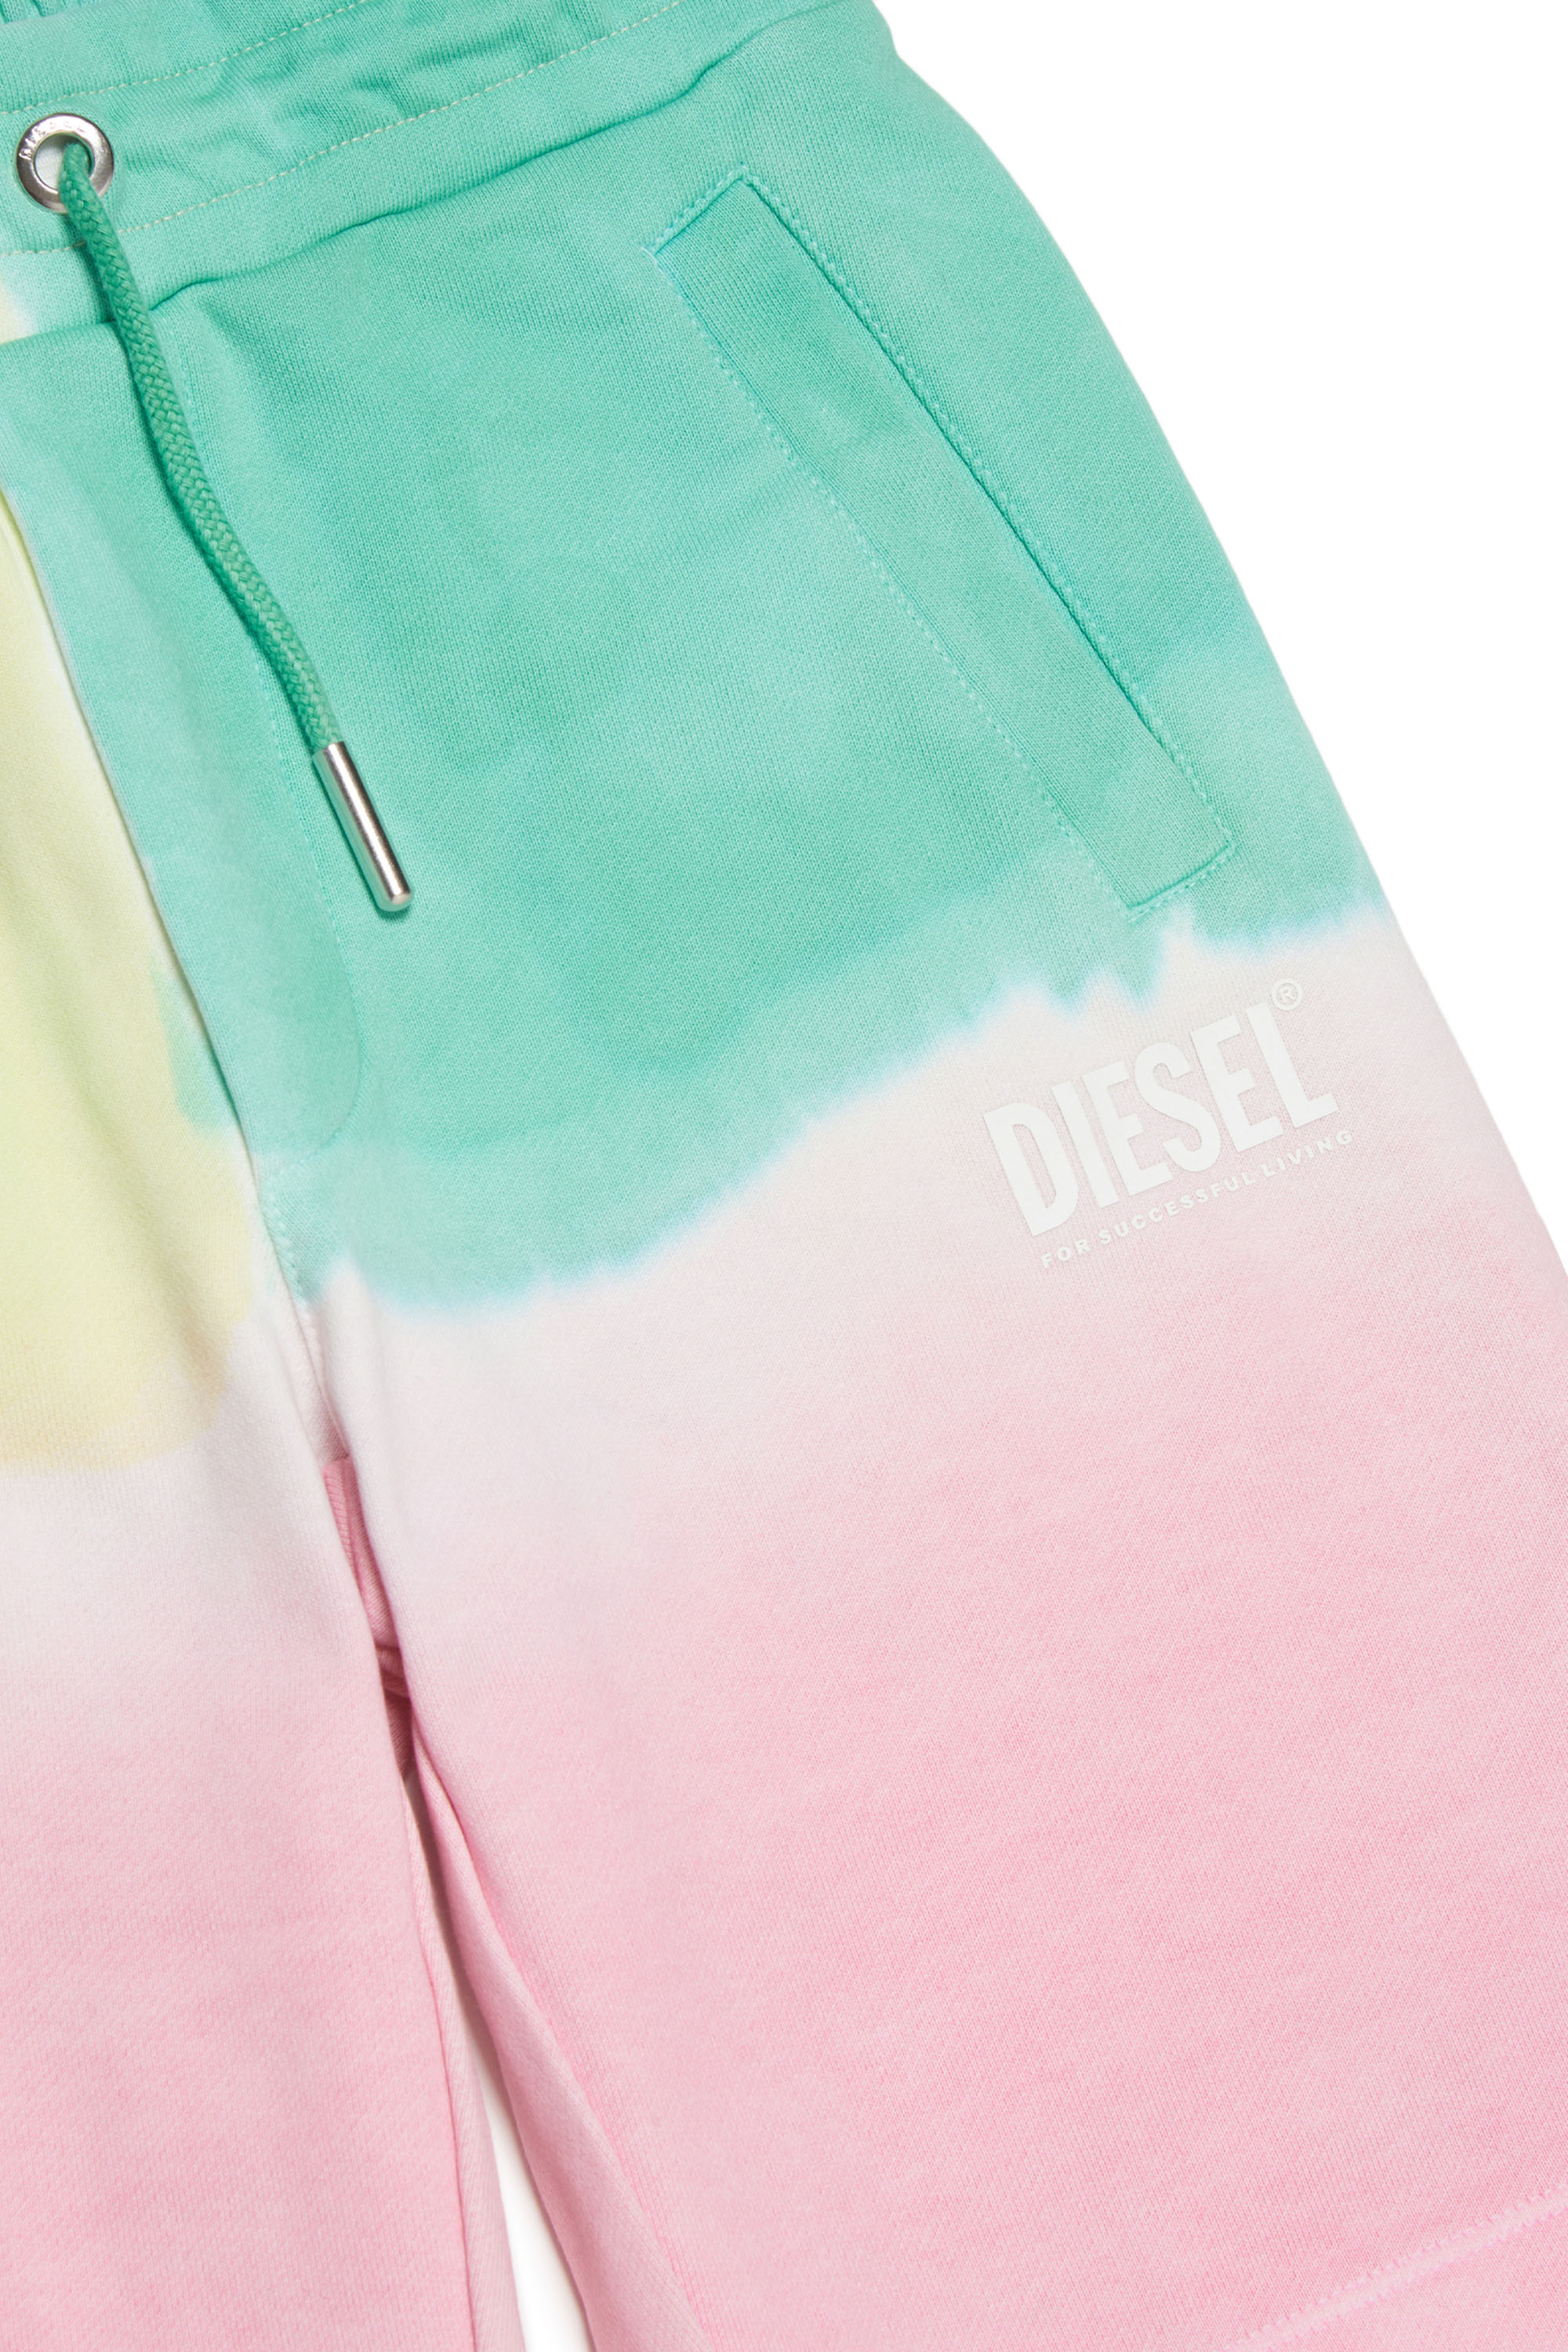 Diesel - PKONY, Pink/Green - Image 3